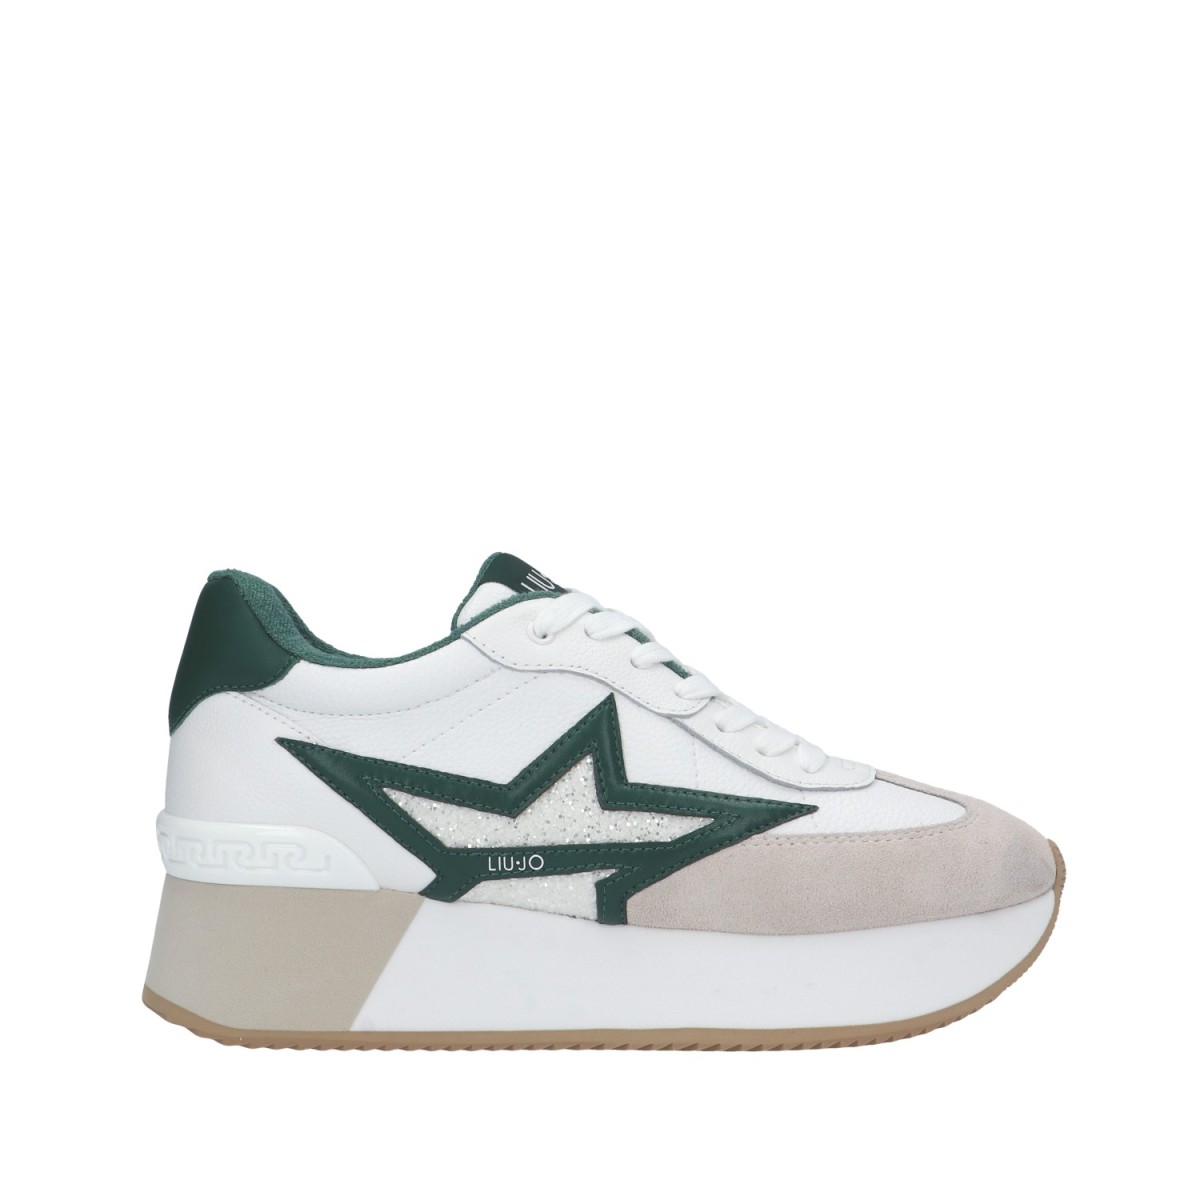 Liu jo Sneaker Bianco/verde...